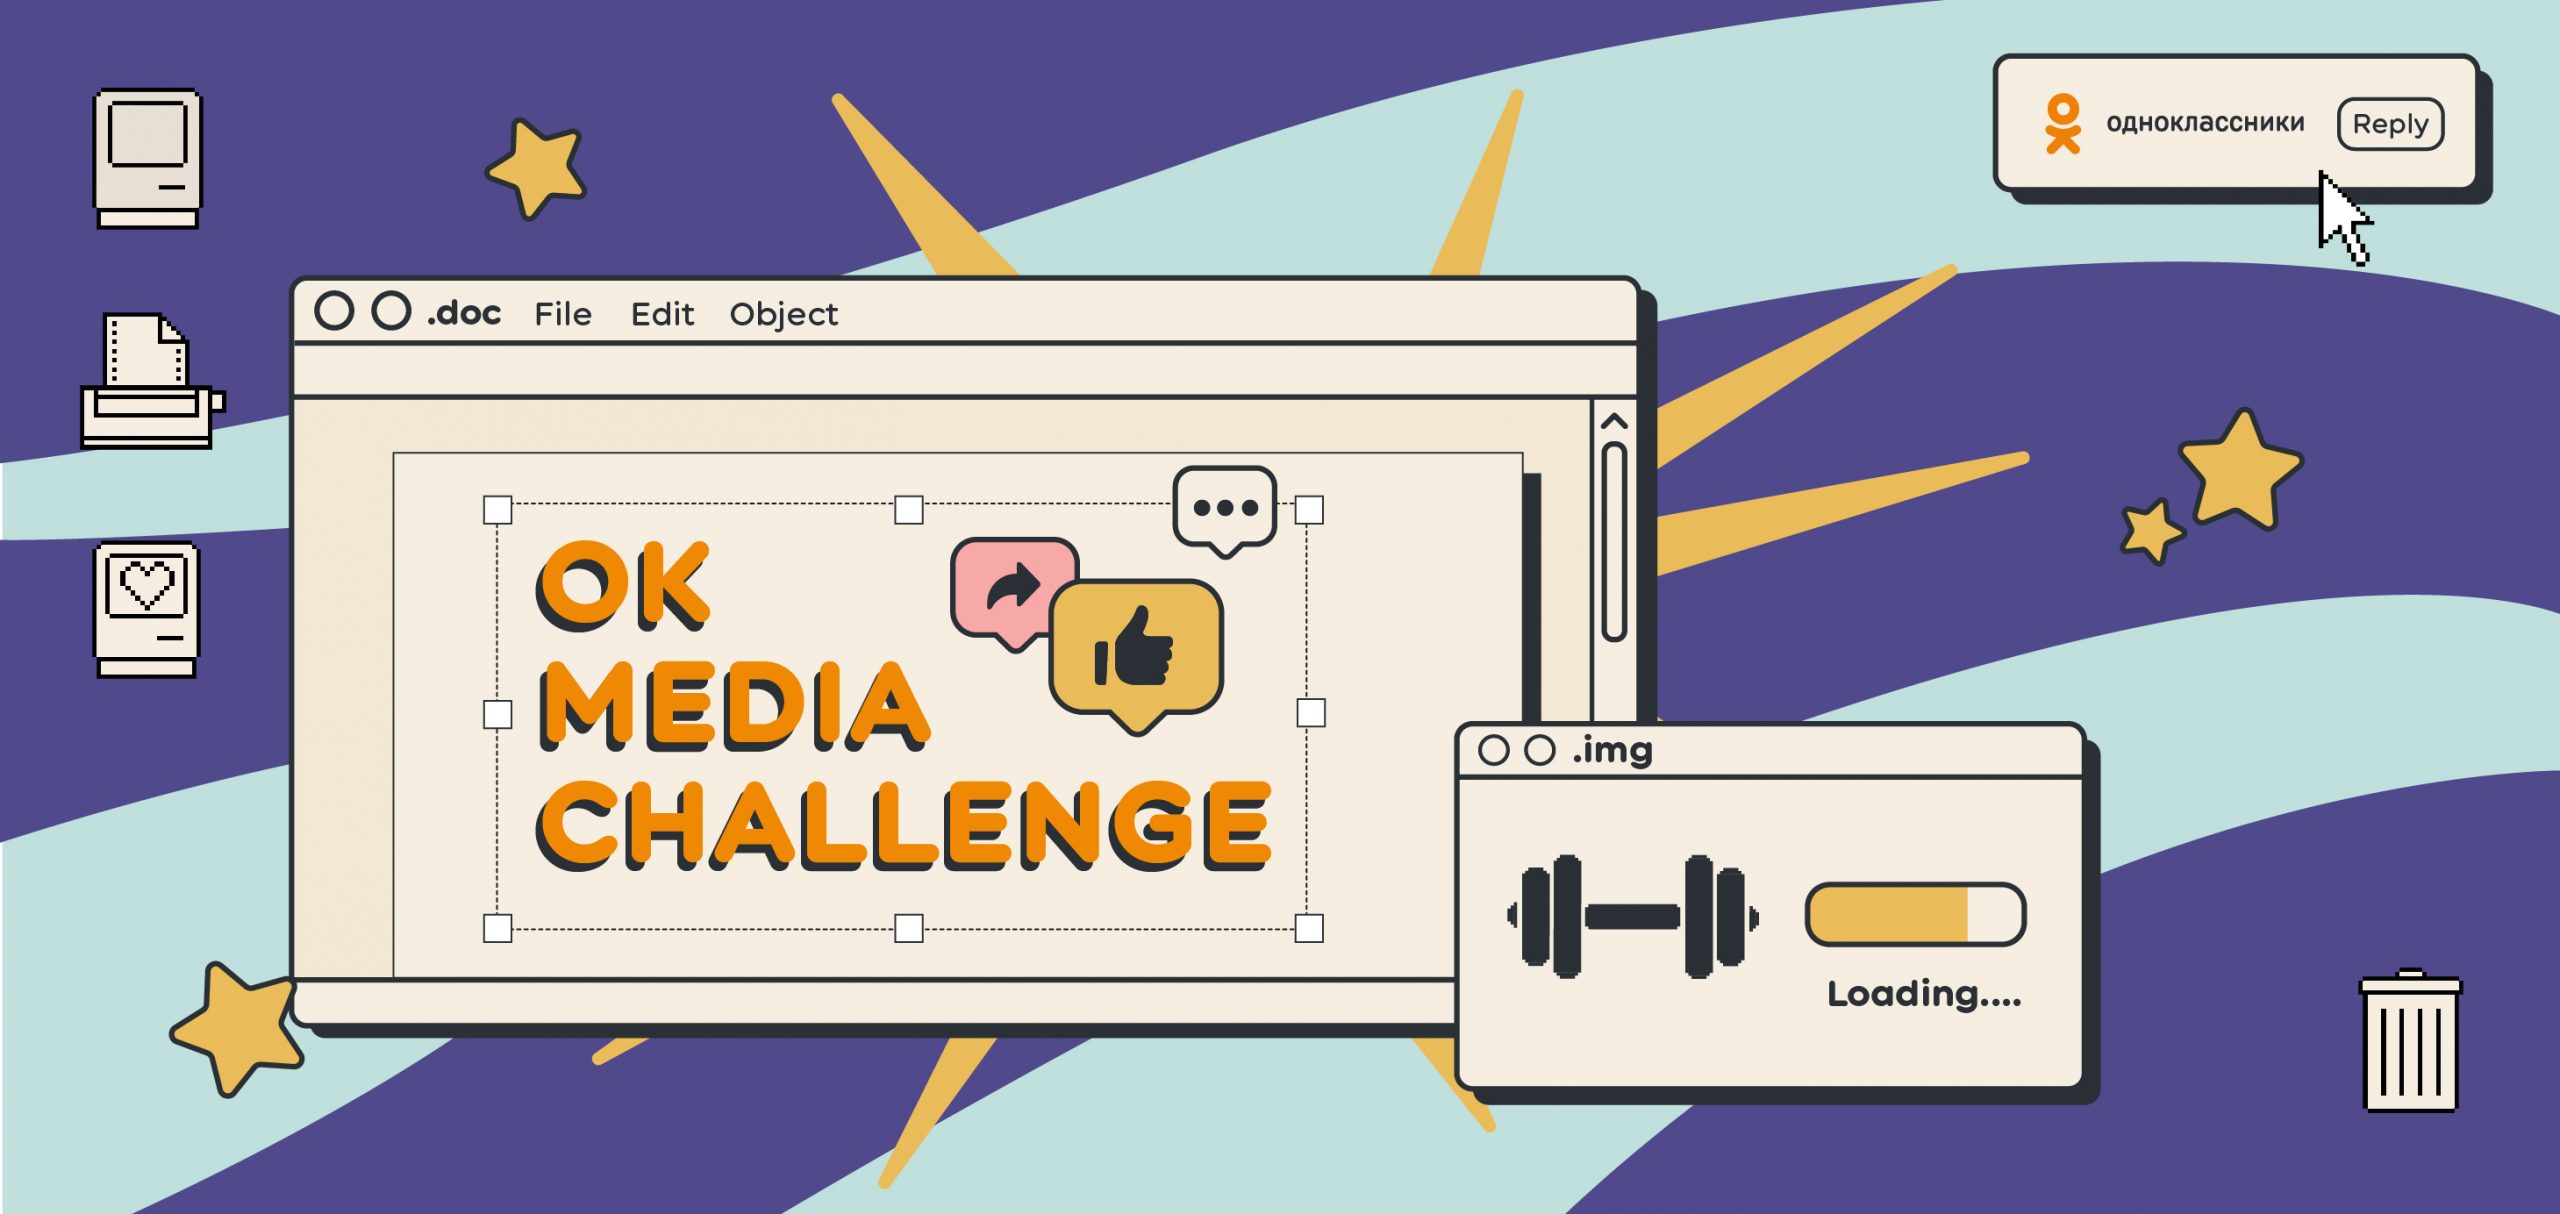 Одноклассники проведут  конкурс для региональных СМИ OK Media Challenge 2020